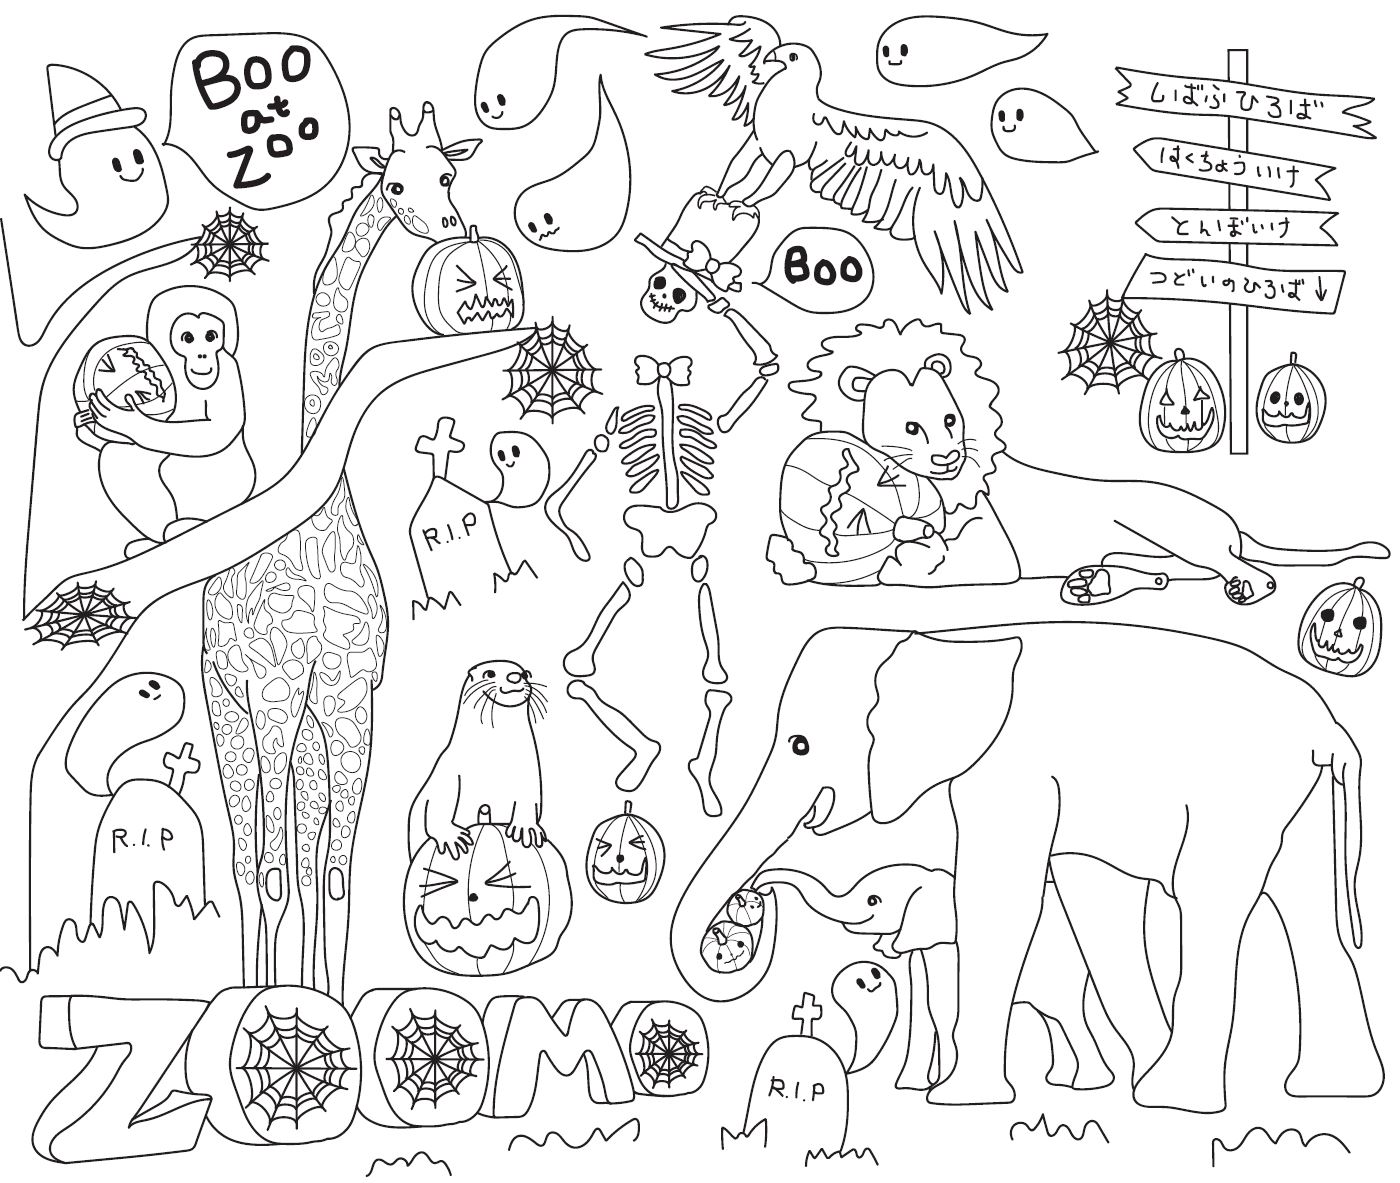 ハロウィンぬりえイラストの紹介とぬりえ配布のお知らせ 盛岡市動物公園 Zoomo